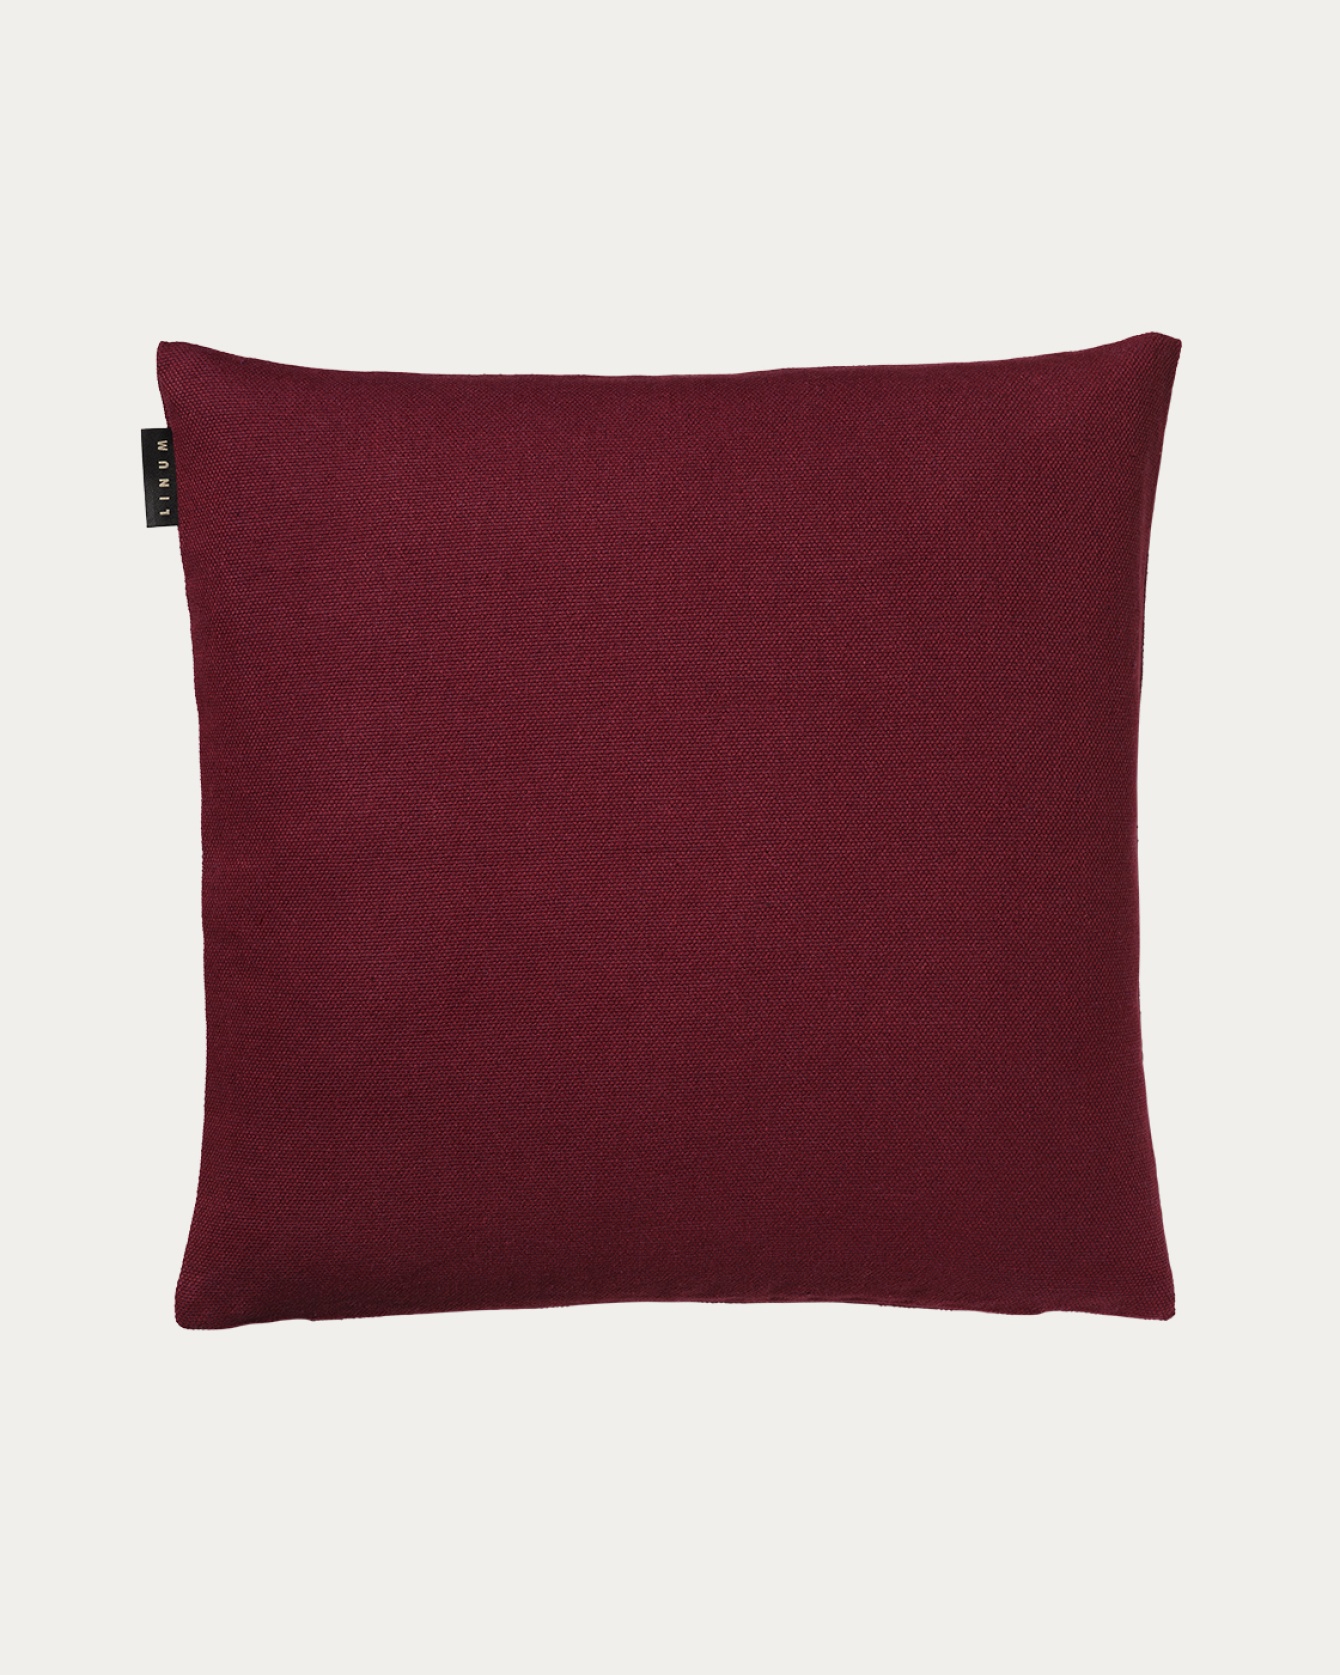 Produktbild burgundyröd PEPPER kuddfodral av mjuk bomull från LINUM DESIGN. Lätt att tvätta och hållbar genom generationer. Storlek 50x50 cm.